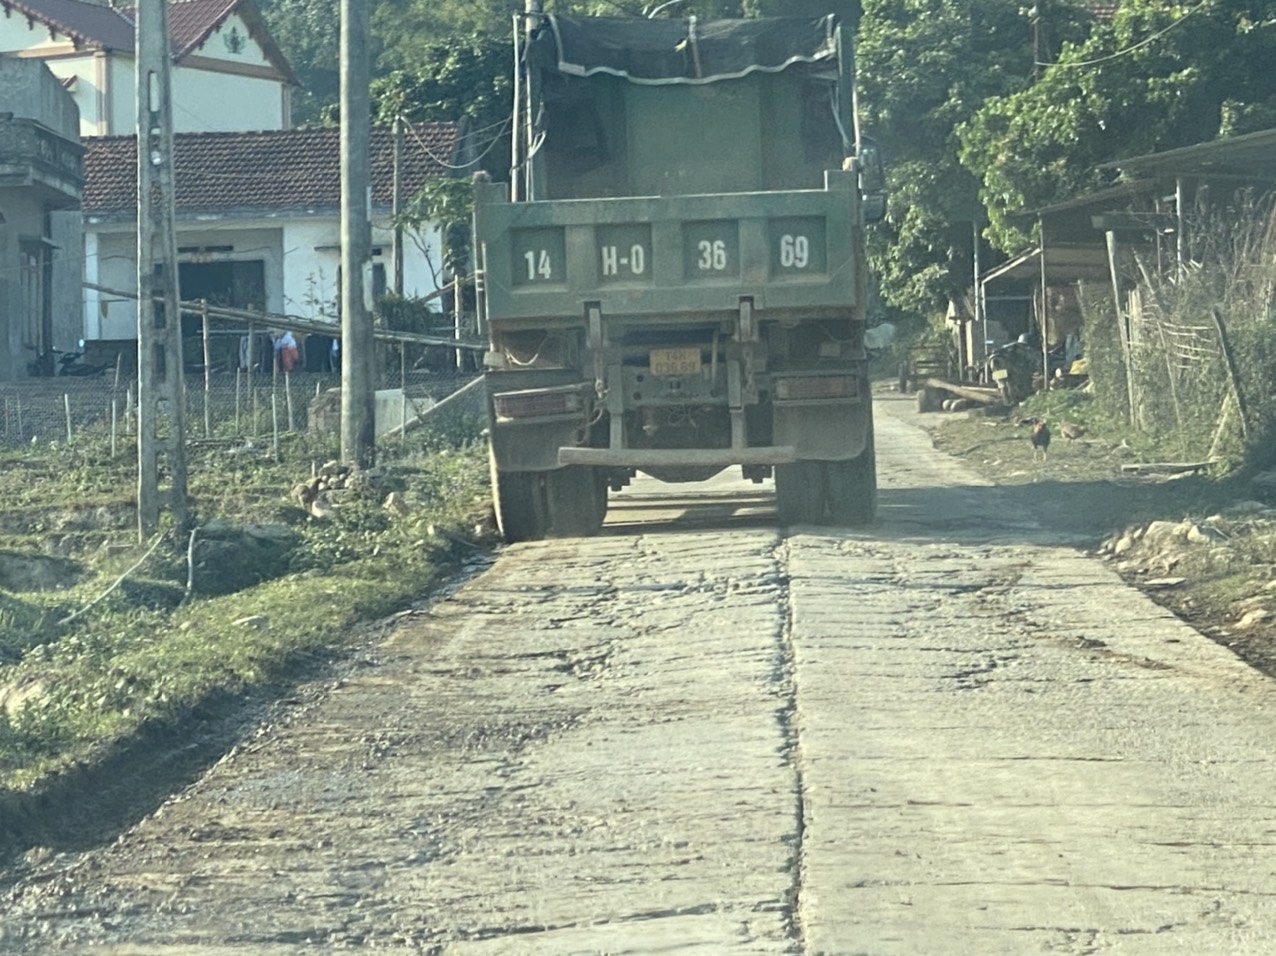 Đường thôn ở huyện miền núi Bình Liêu oằn mình dưới lốp đoàn xe nghi quá tải - Ảnh 5.